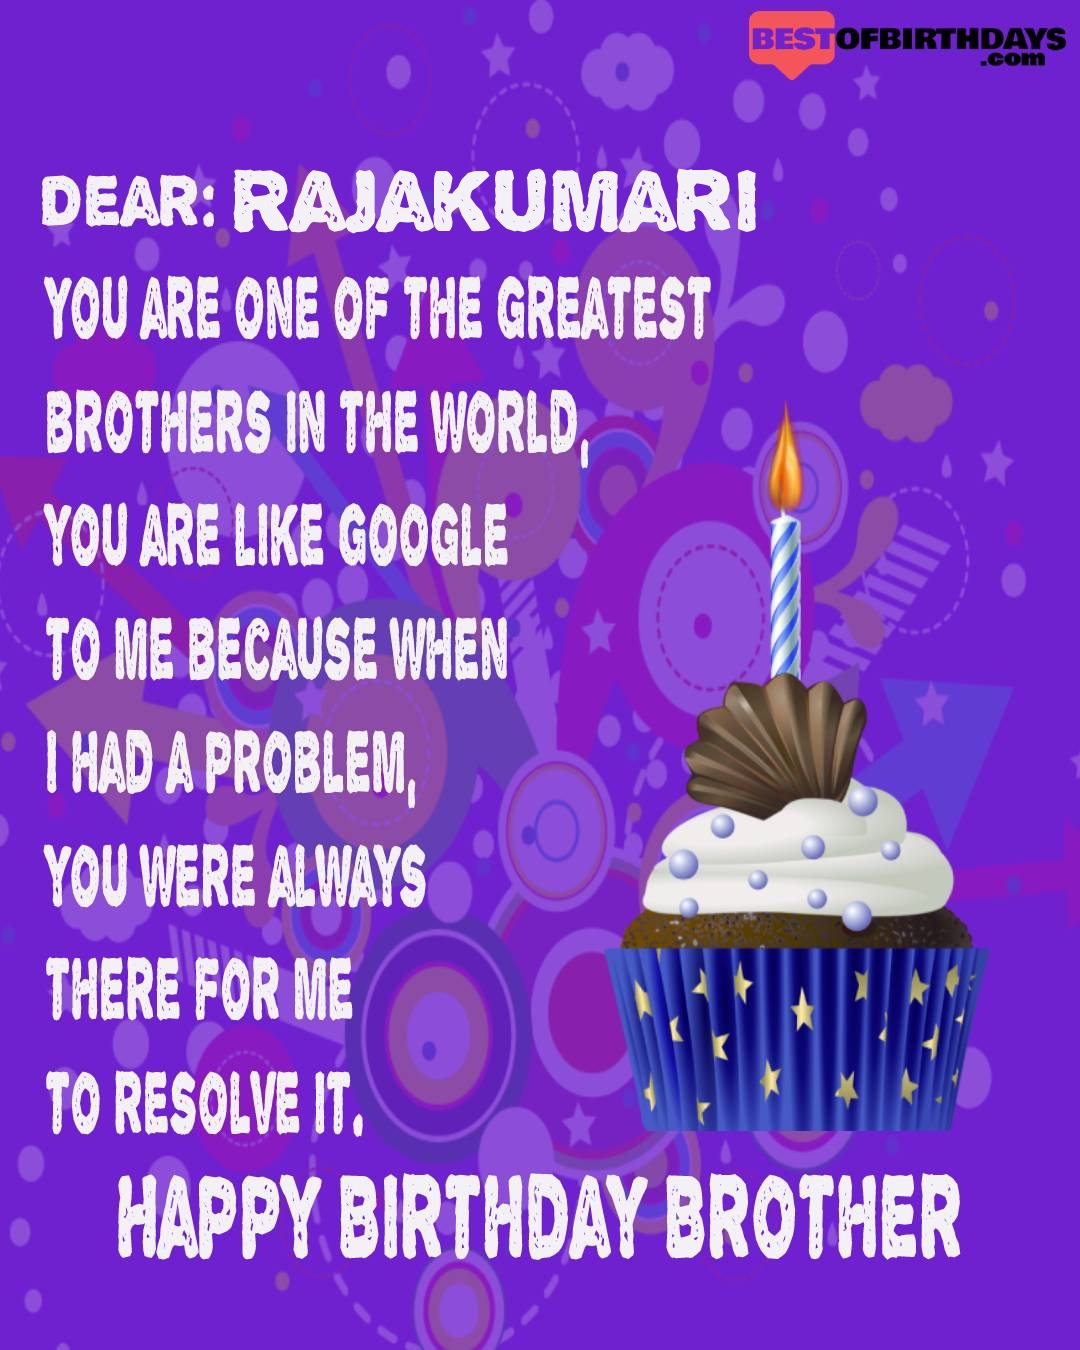 Happy birthday rajakumari bhai brother bro